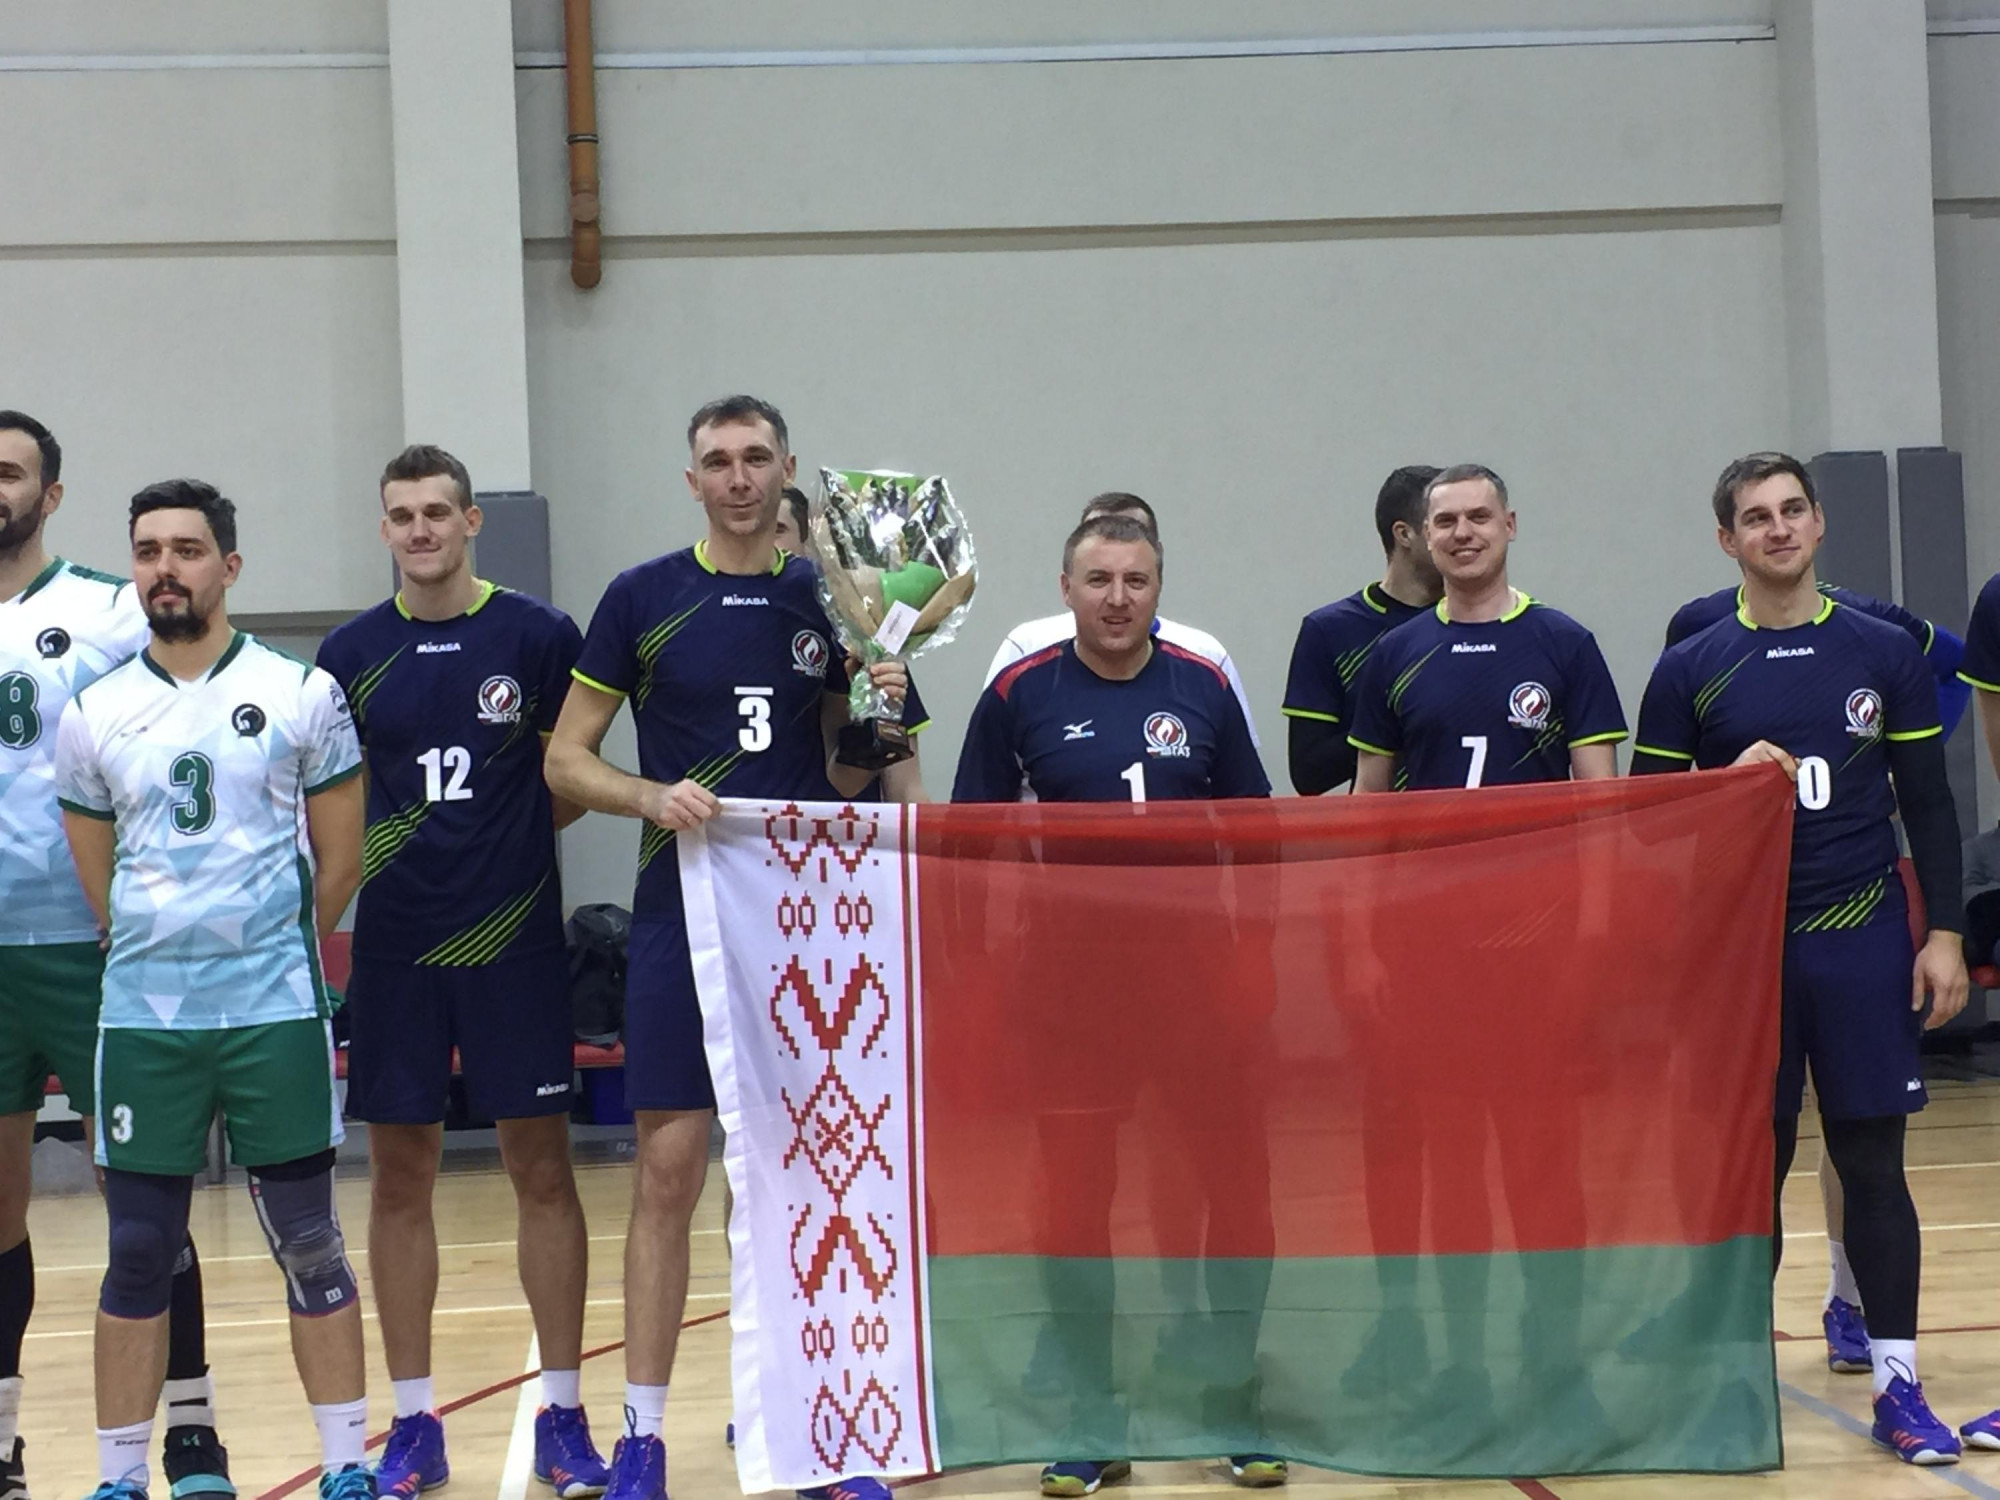 Кубок «Volley ПРОМ-2019»